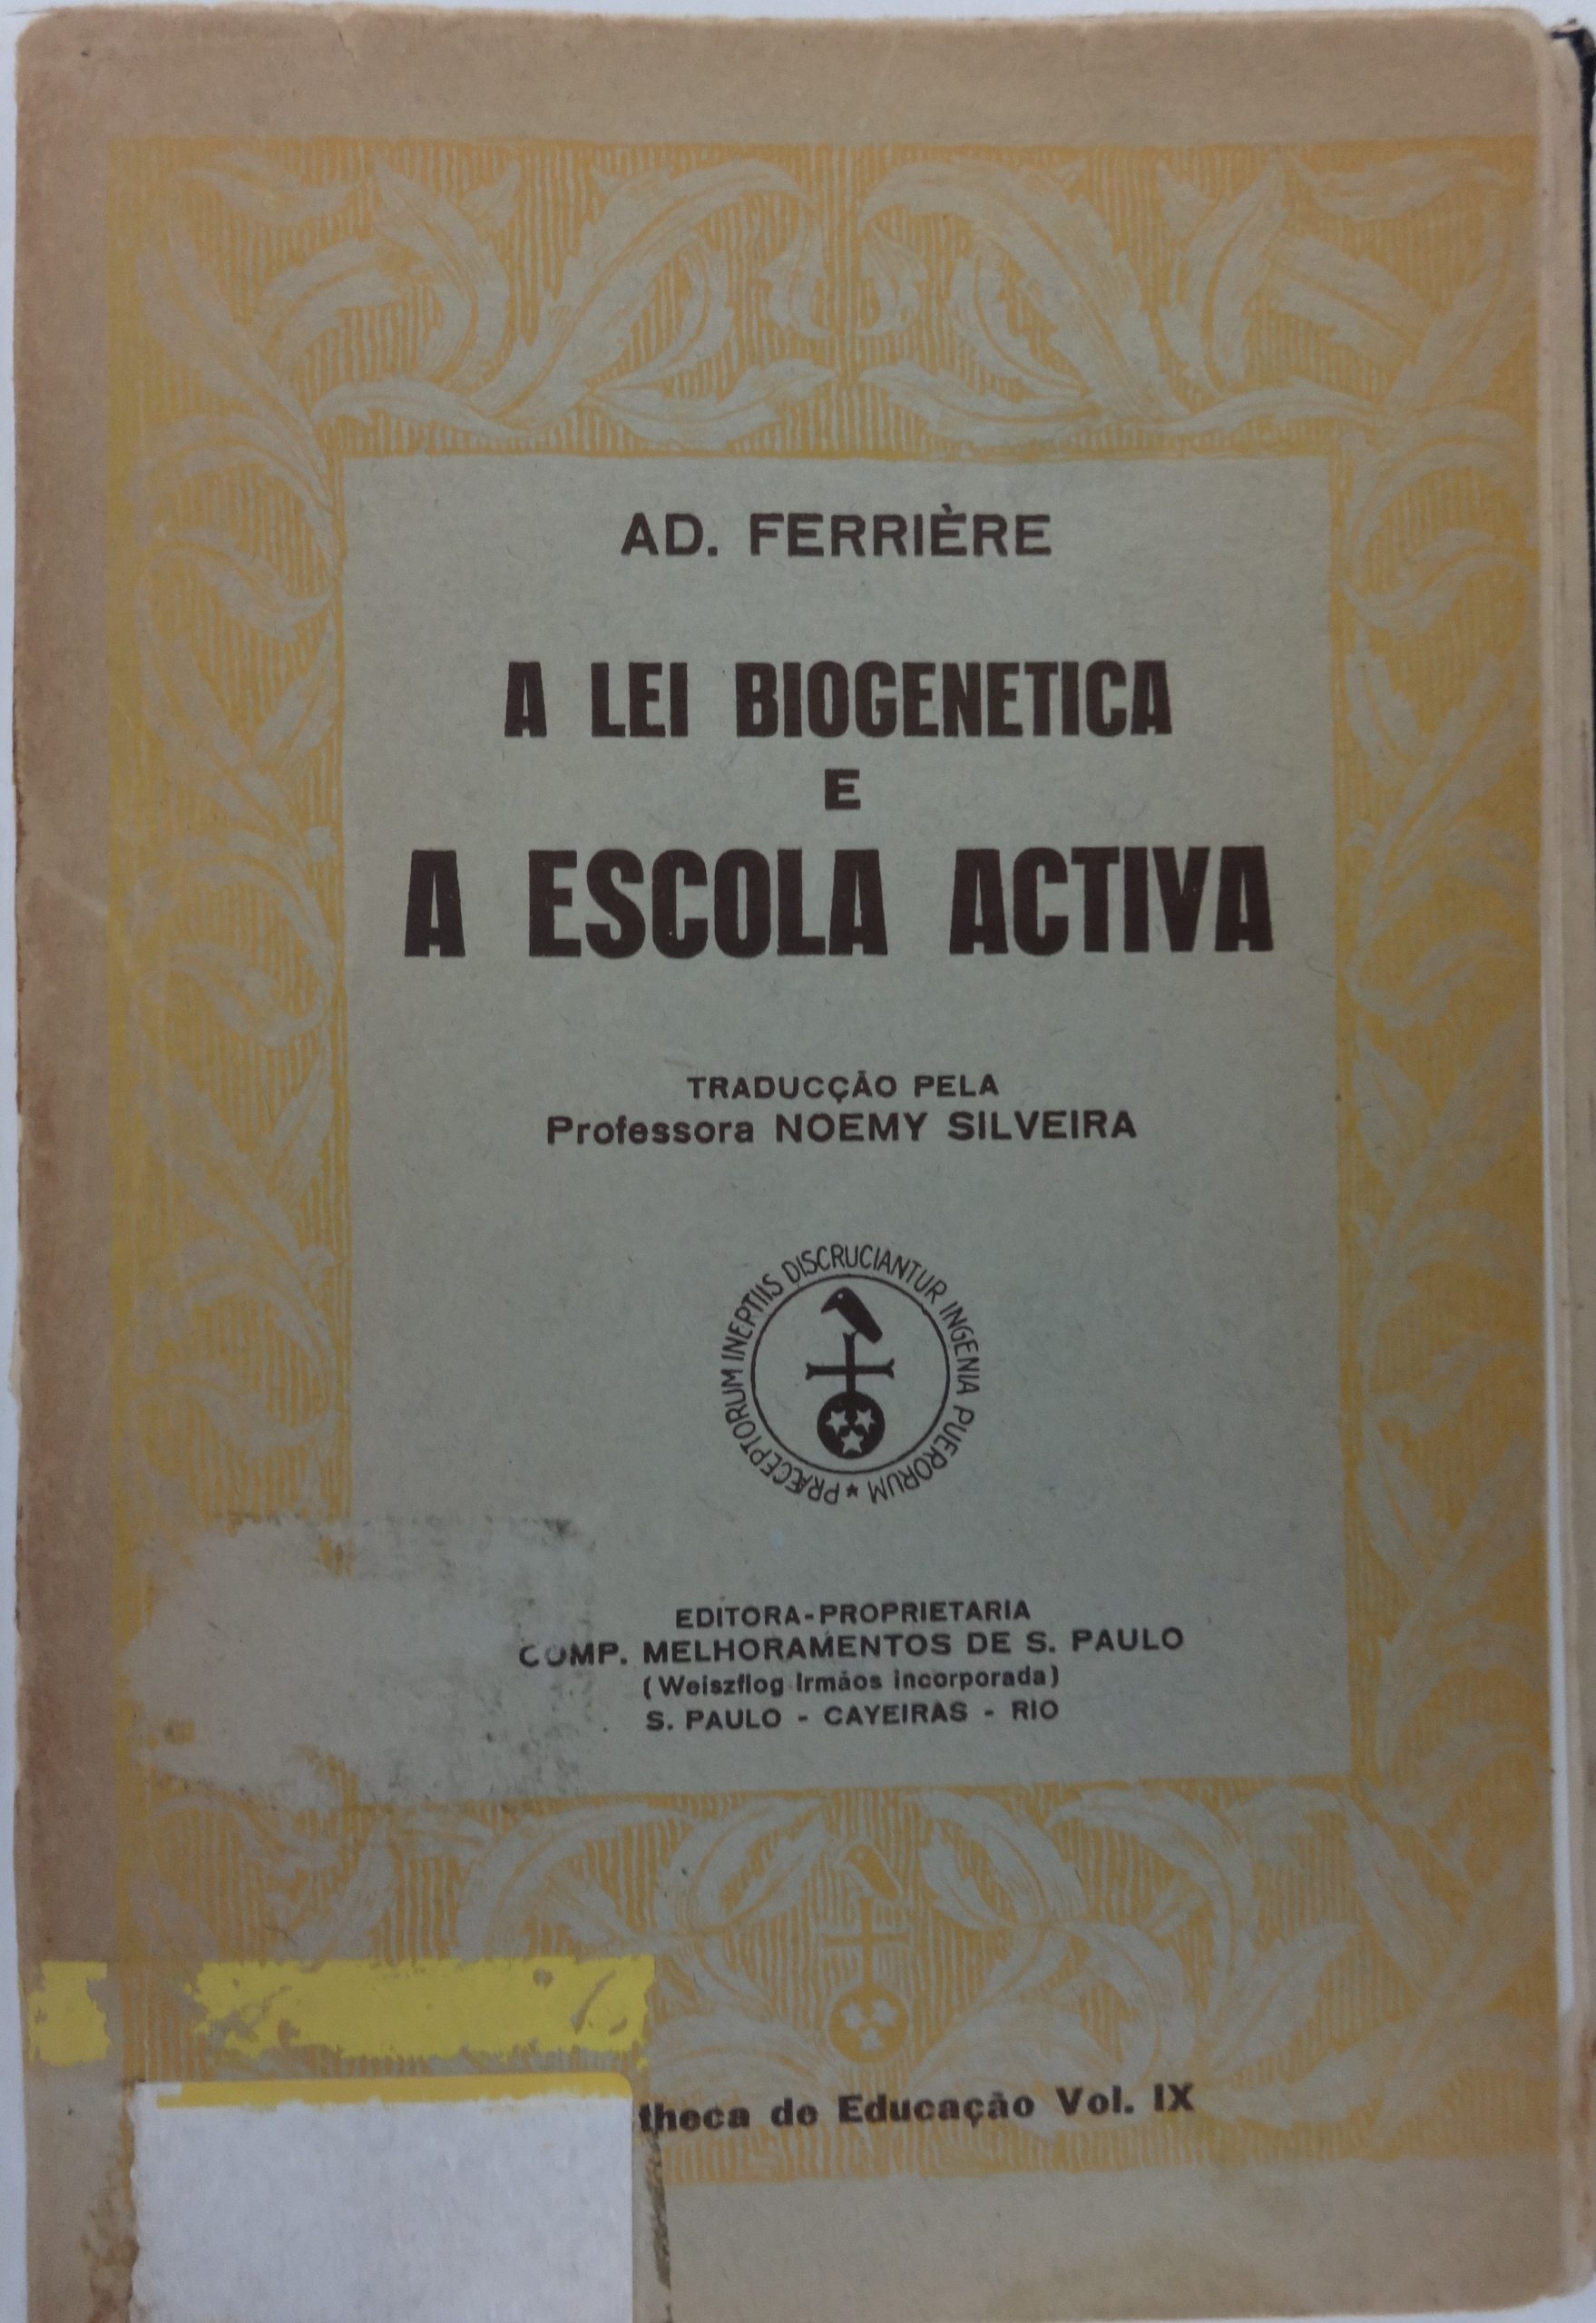 Livro de Adolphe Ferrière traduzido por Noemy. 
Fonte: Ferrière, Adolphe (1929?). A lei biogenética e a escola activa. 2 ed. São Paulo: Melhoramentos. Acervo da Biblioteca da FEUSP.